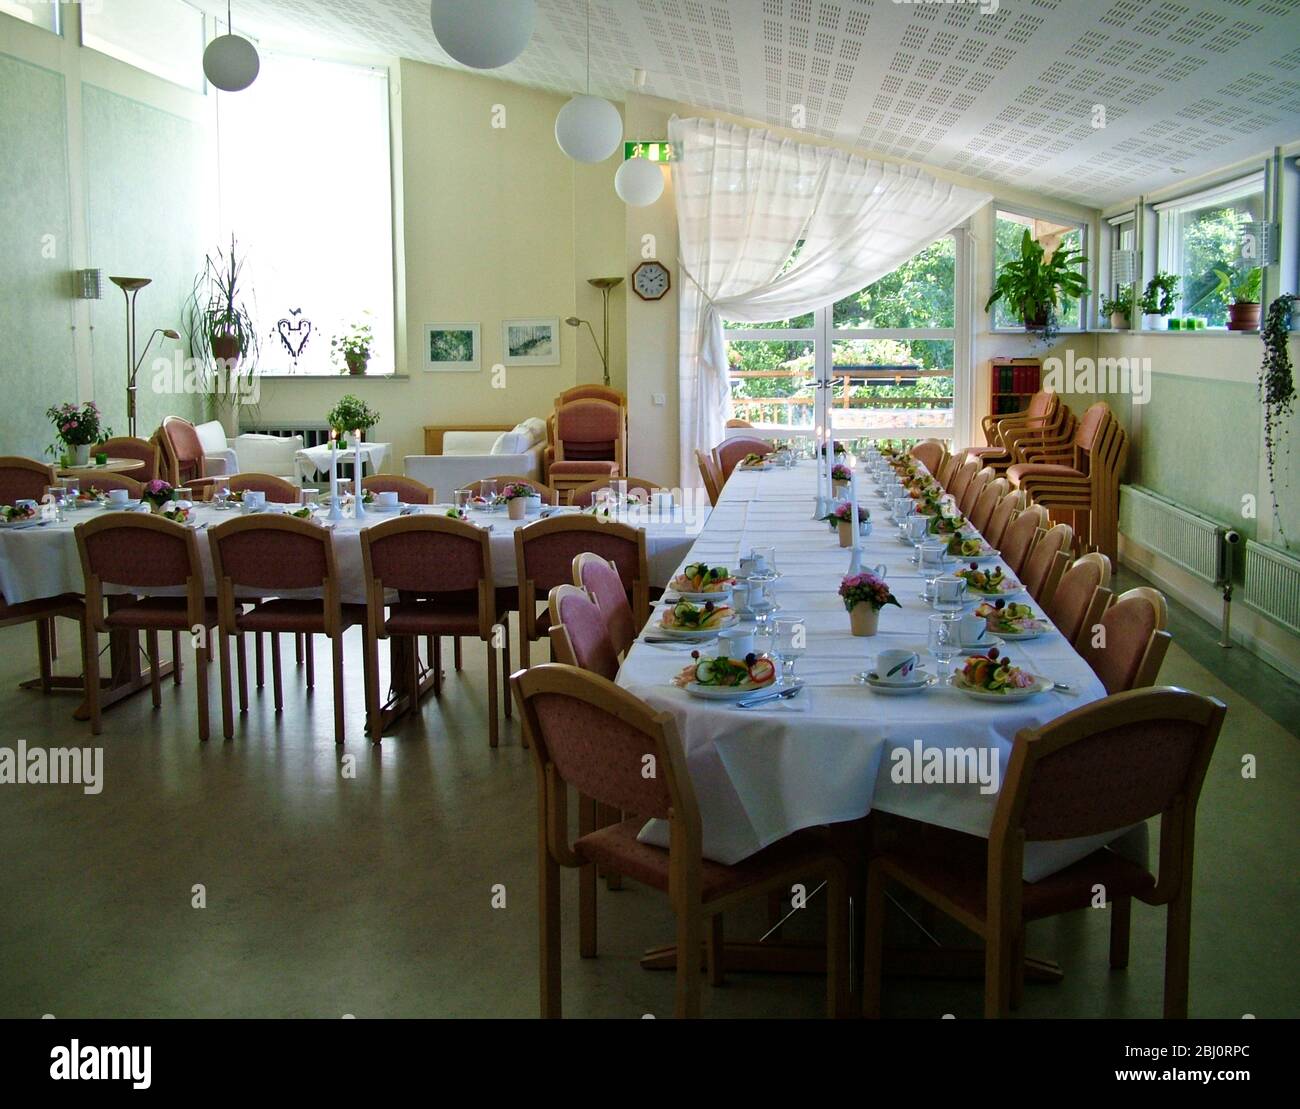 El atractivo salón de la iglesia en Lerum, Suecia, se sirve para el almuerzo de recepción después de un funeral, con sándwiches suecos abiertos, velas y flores - Foto de stock